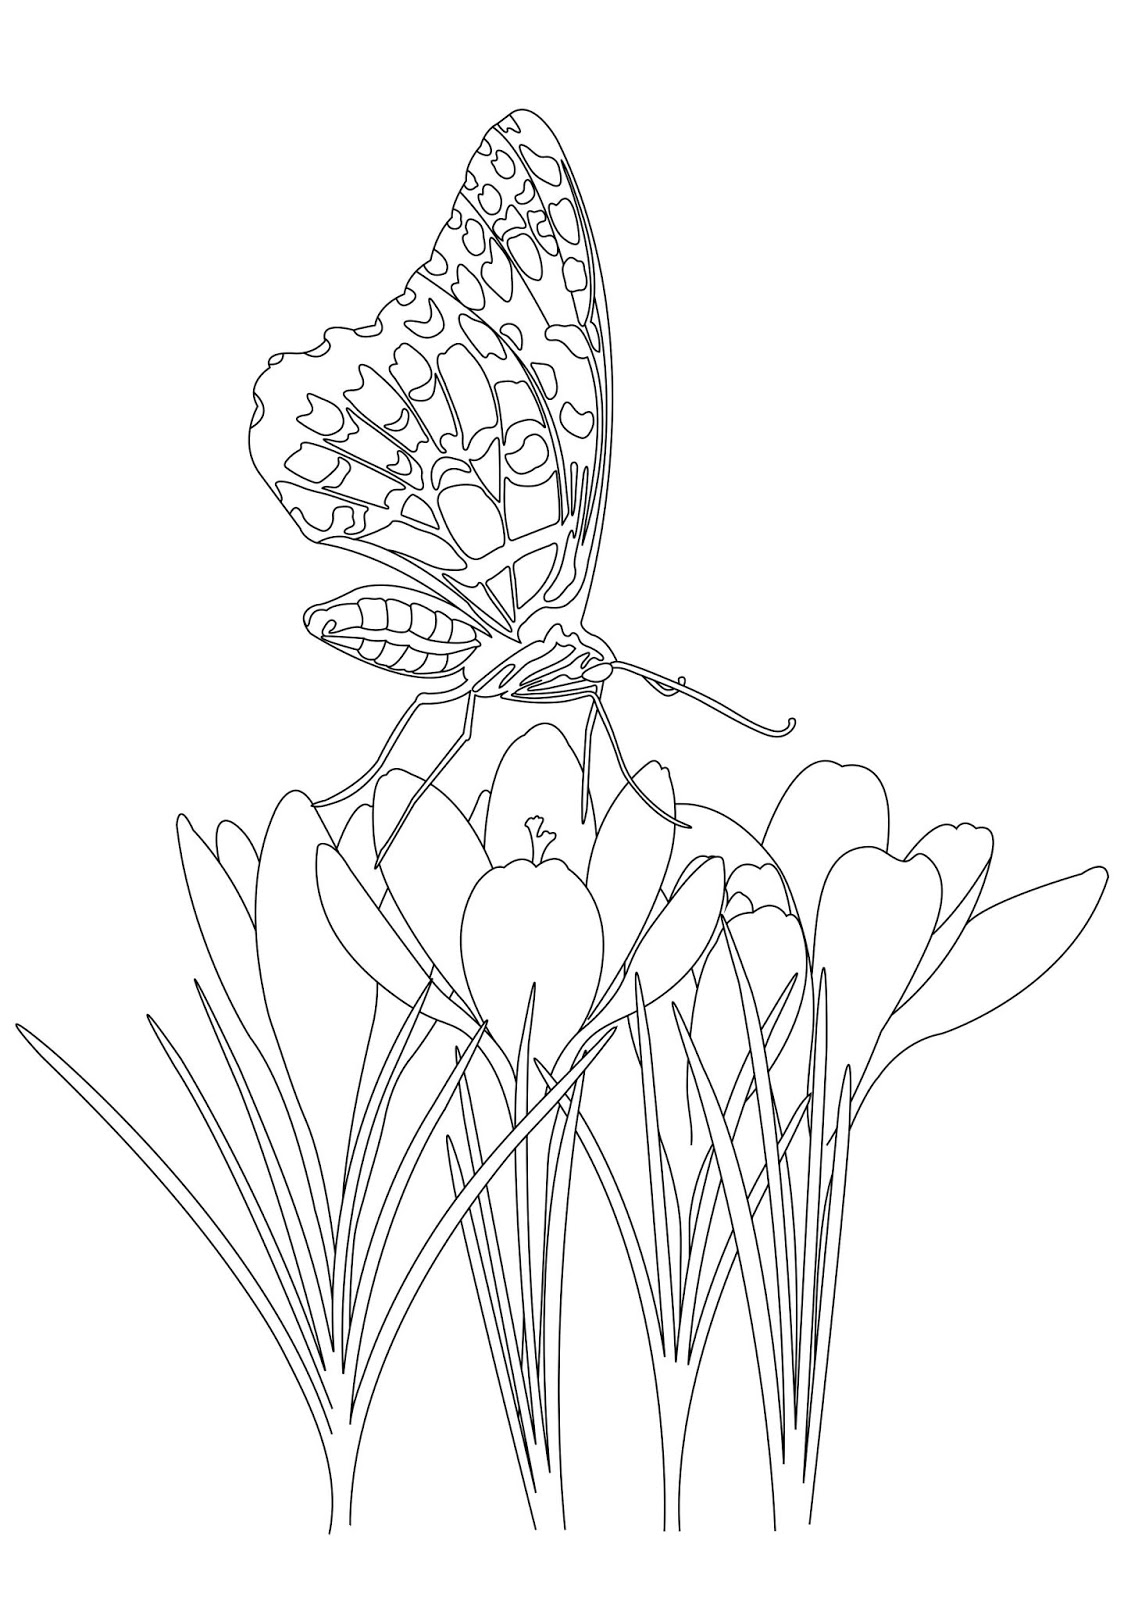 Tranh tô màu con bướm đậu trên hoa thủy tiên